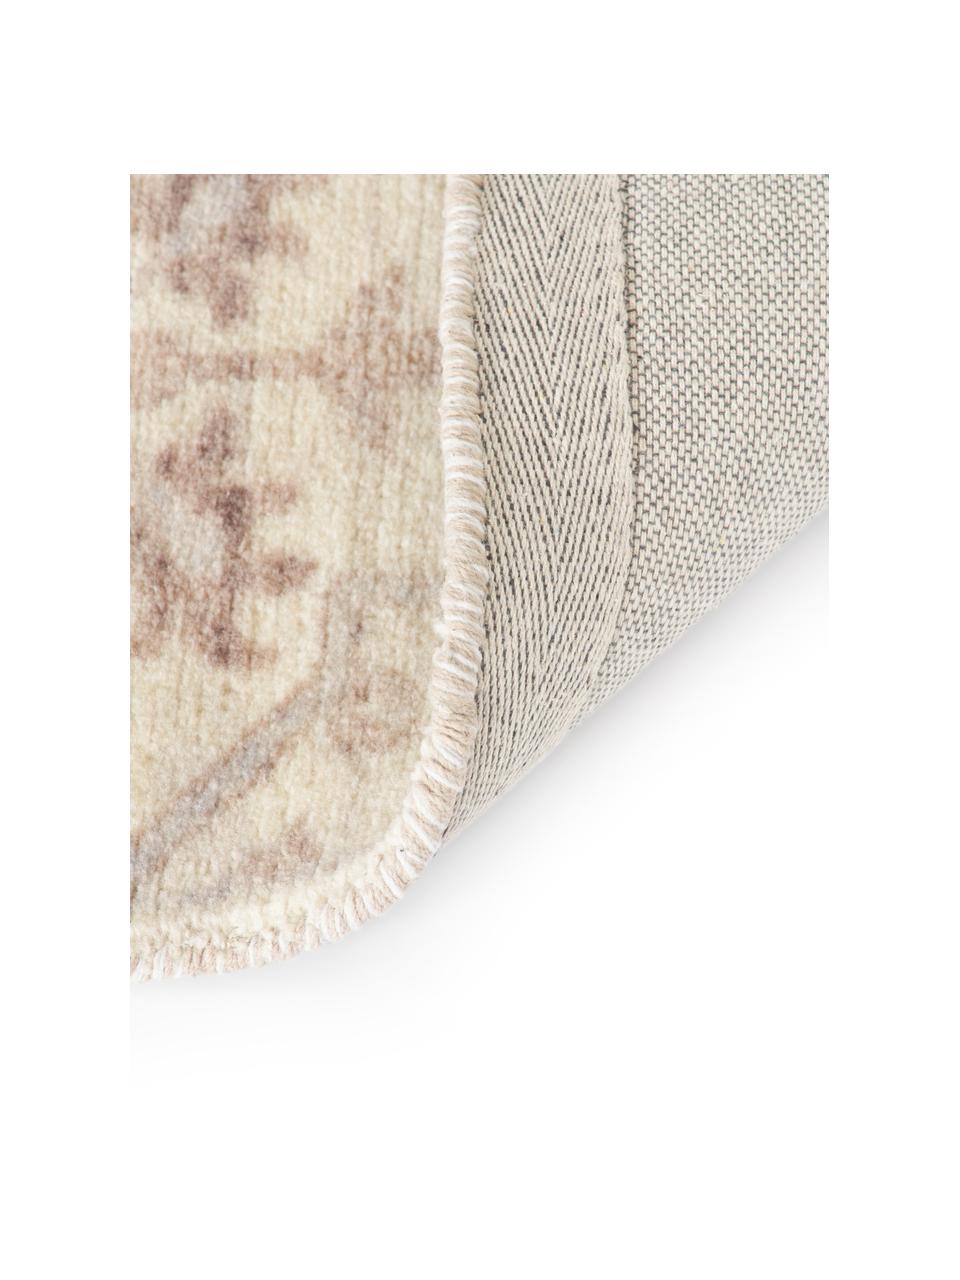 Dywan z krótkim włosiem Rosalie, 100% wełna

Włókna dywanów wełnianych mogą nieznacznie rozluźniać się w pierwszych tygodniach użytkowania, co ustępuje po pewnym czasie, Beżowy, blady różowy, S 120 x D 180 cm (Rozmiar S)